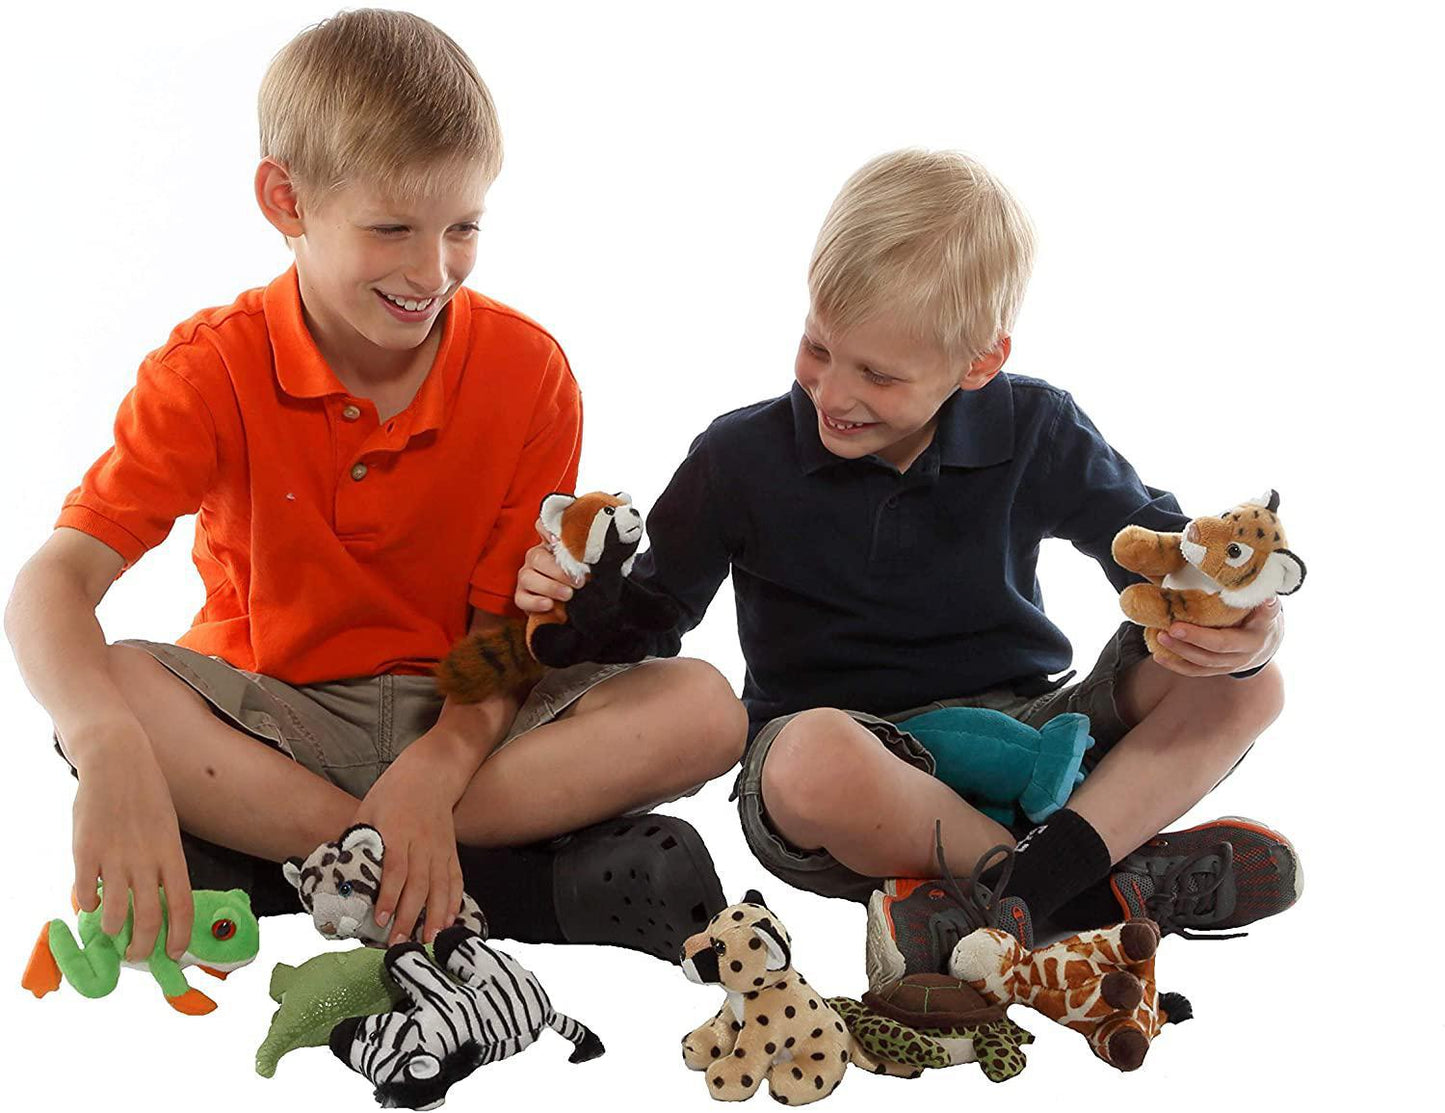 Wild Republic Tiger Plush, Stuffed Animal, Plush Toy, Gifts for Kids, Cuddlekins 5"